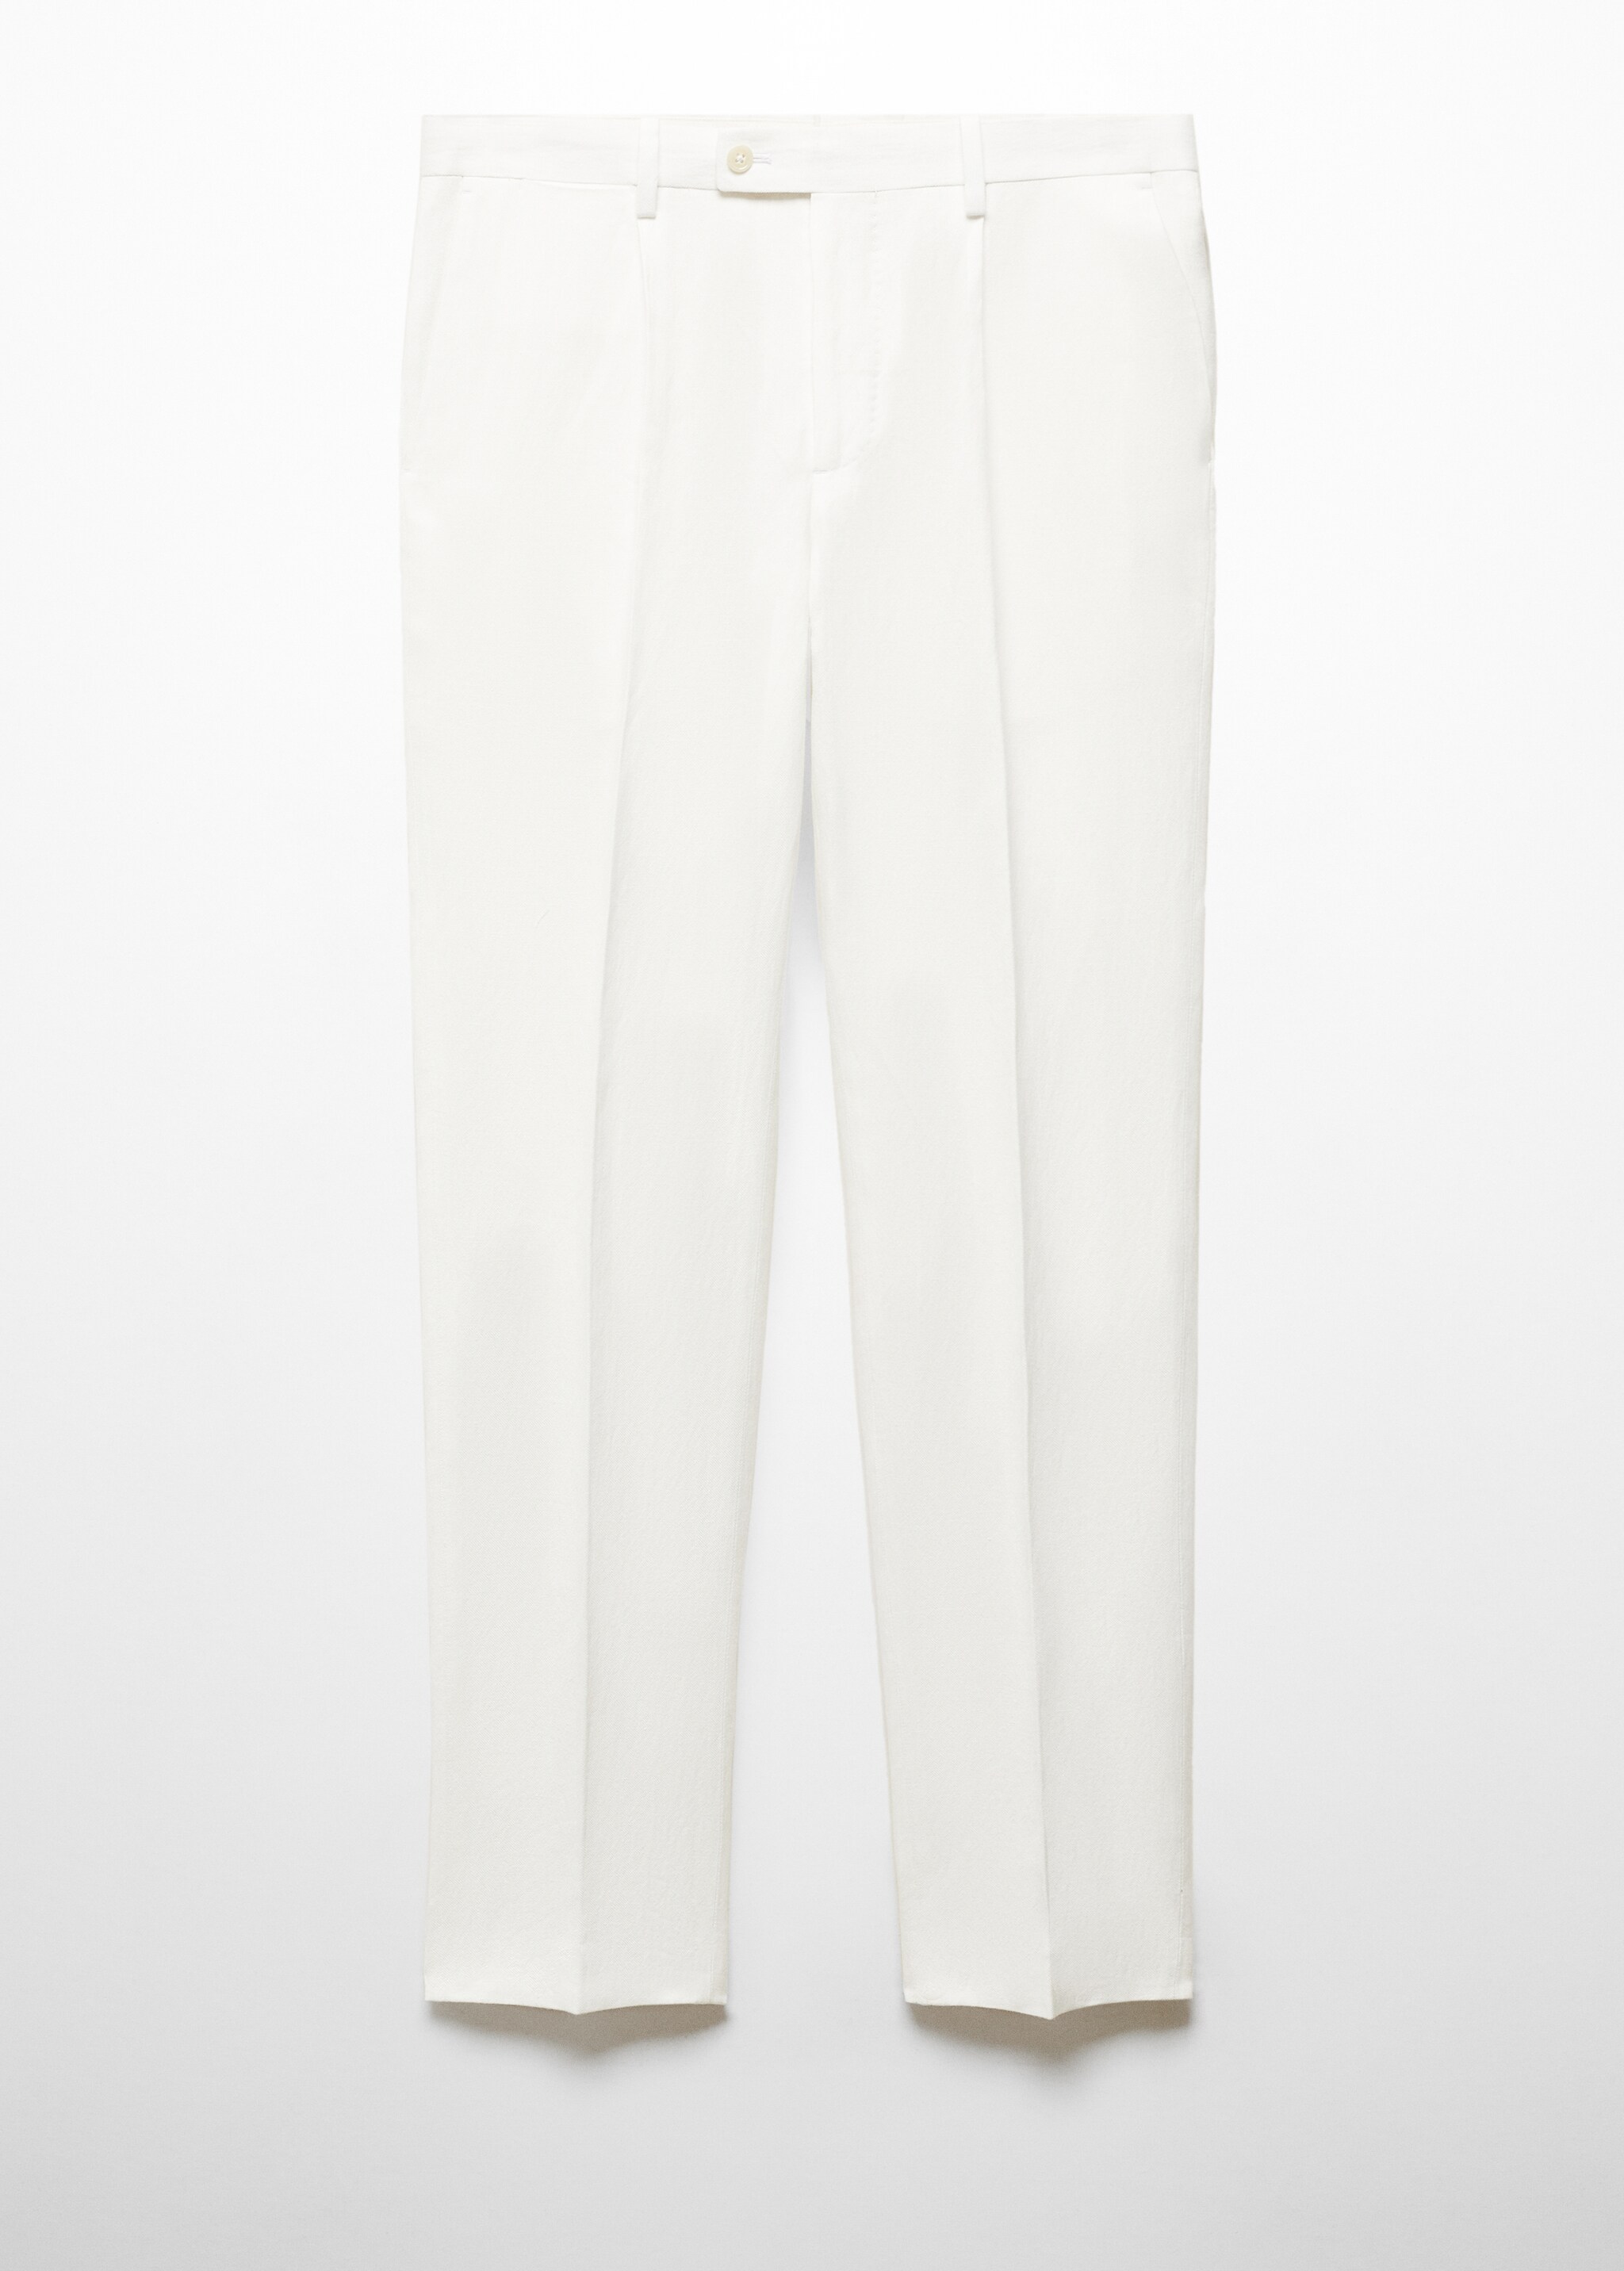 Pantalón traje slim fit algodón lino - Artículo sin modelo